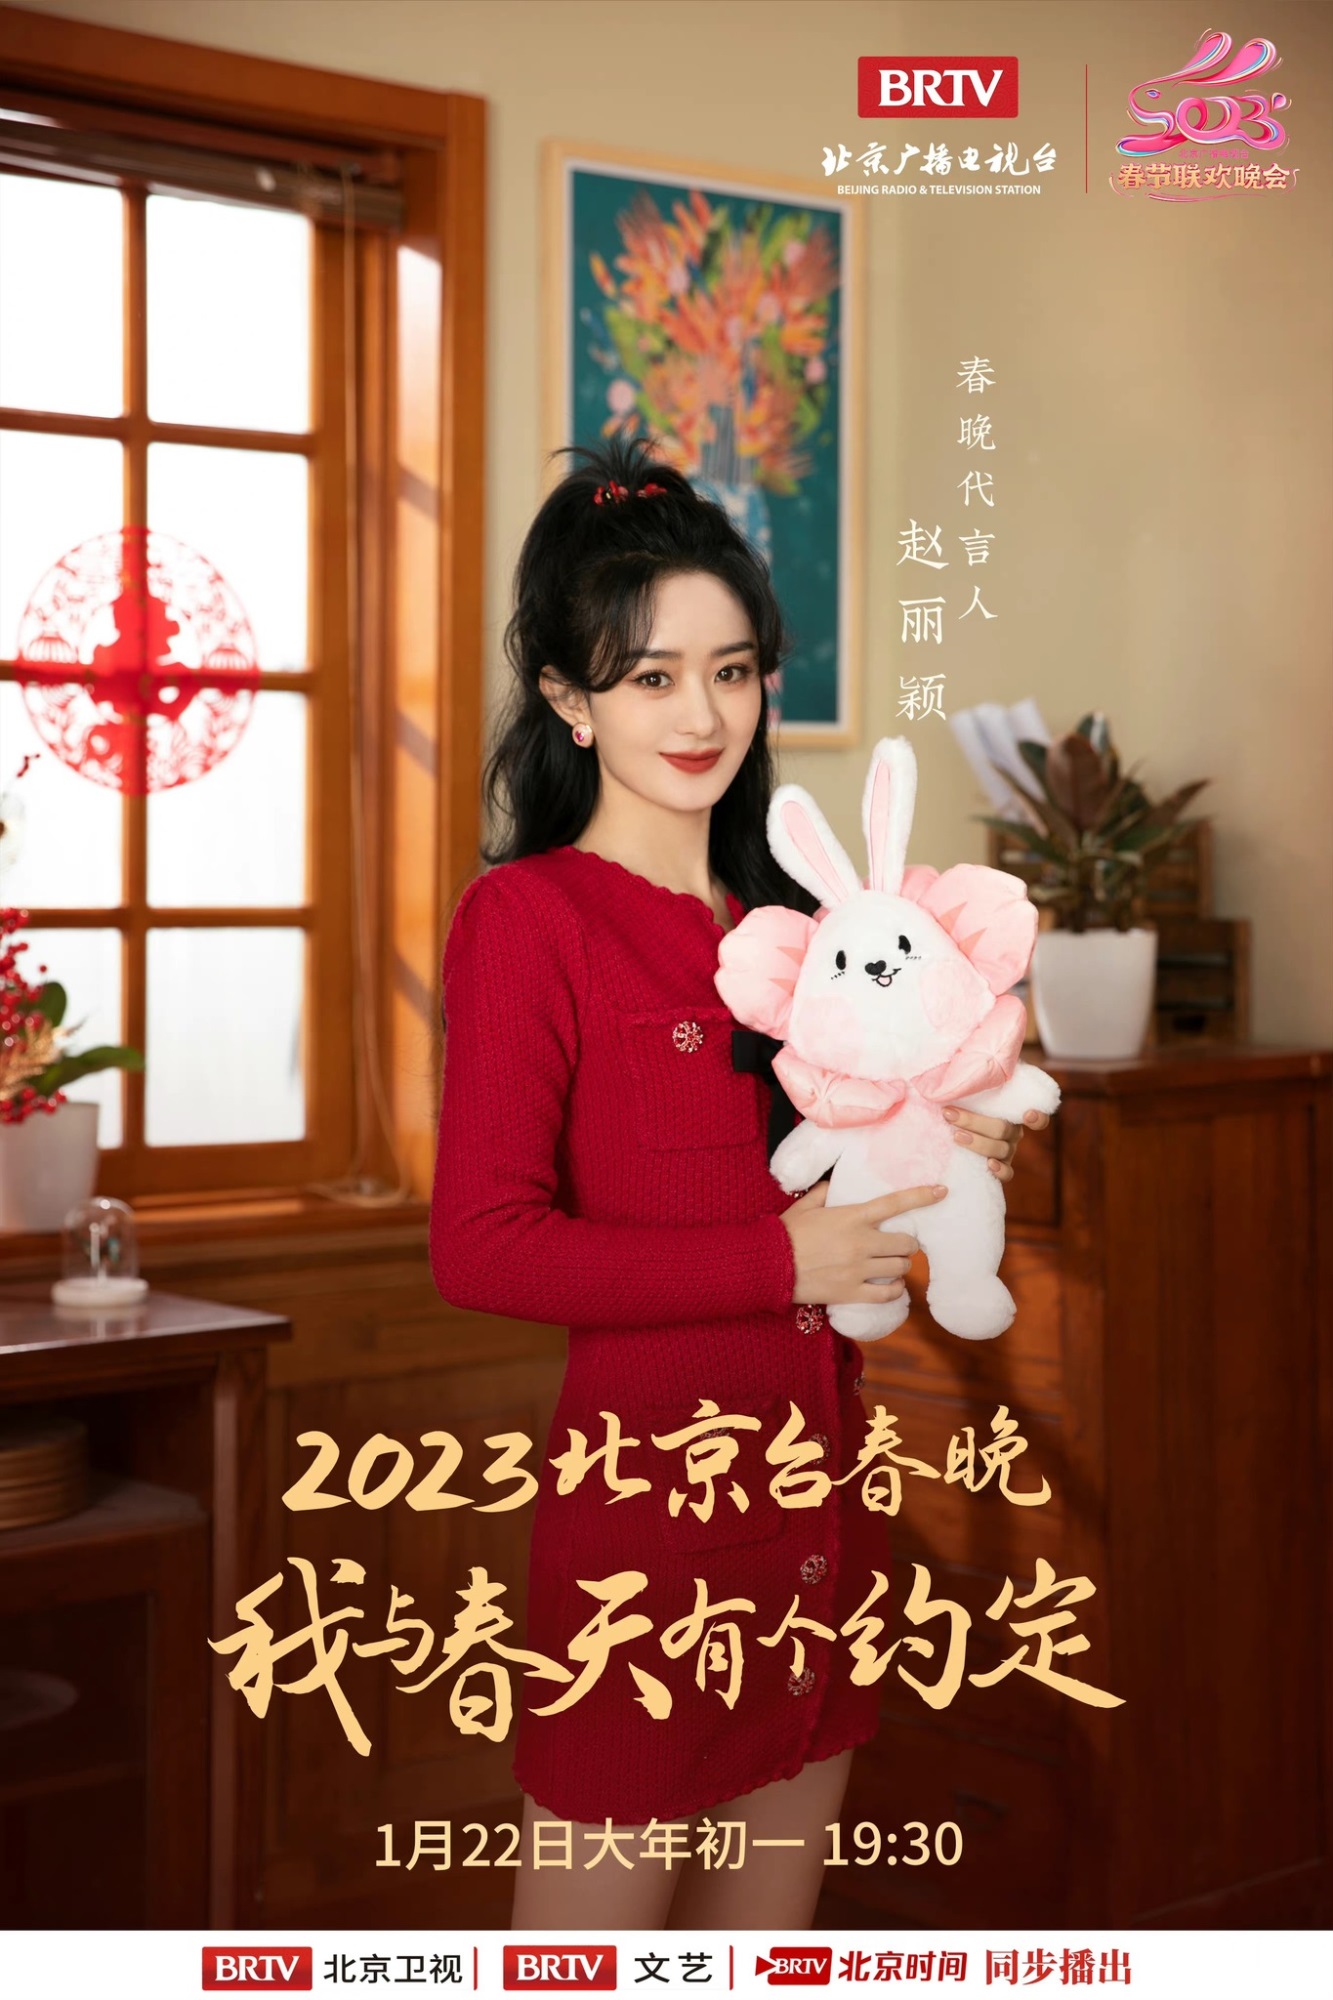 Triệu Lệ Dĩnh khoe nhan sắc thăng hạng, xinh đẹp rạng ngời trong loạt ảnh mới cho Đêm Hội Mùa Xuân Đài Bắc Kinh năm 2023 - Ảnh 3